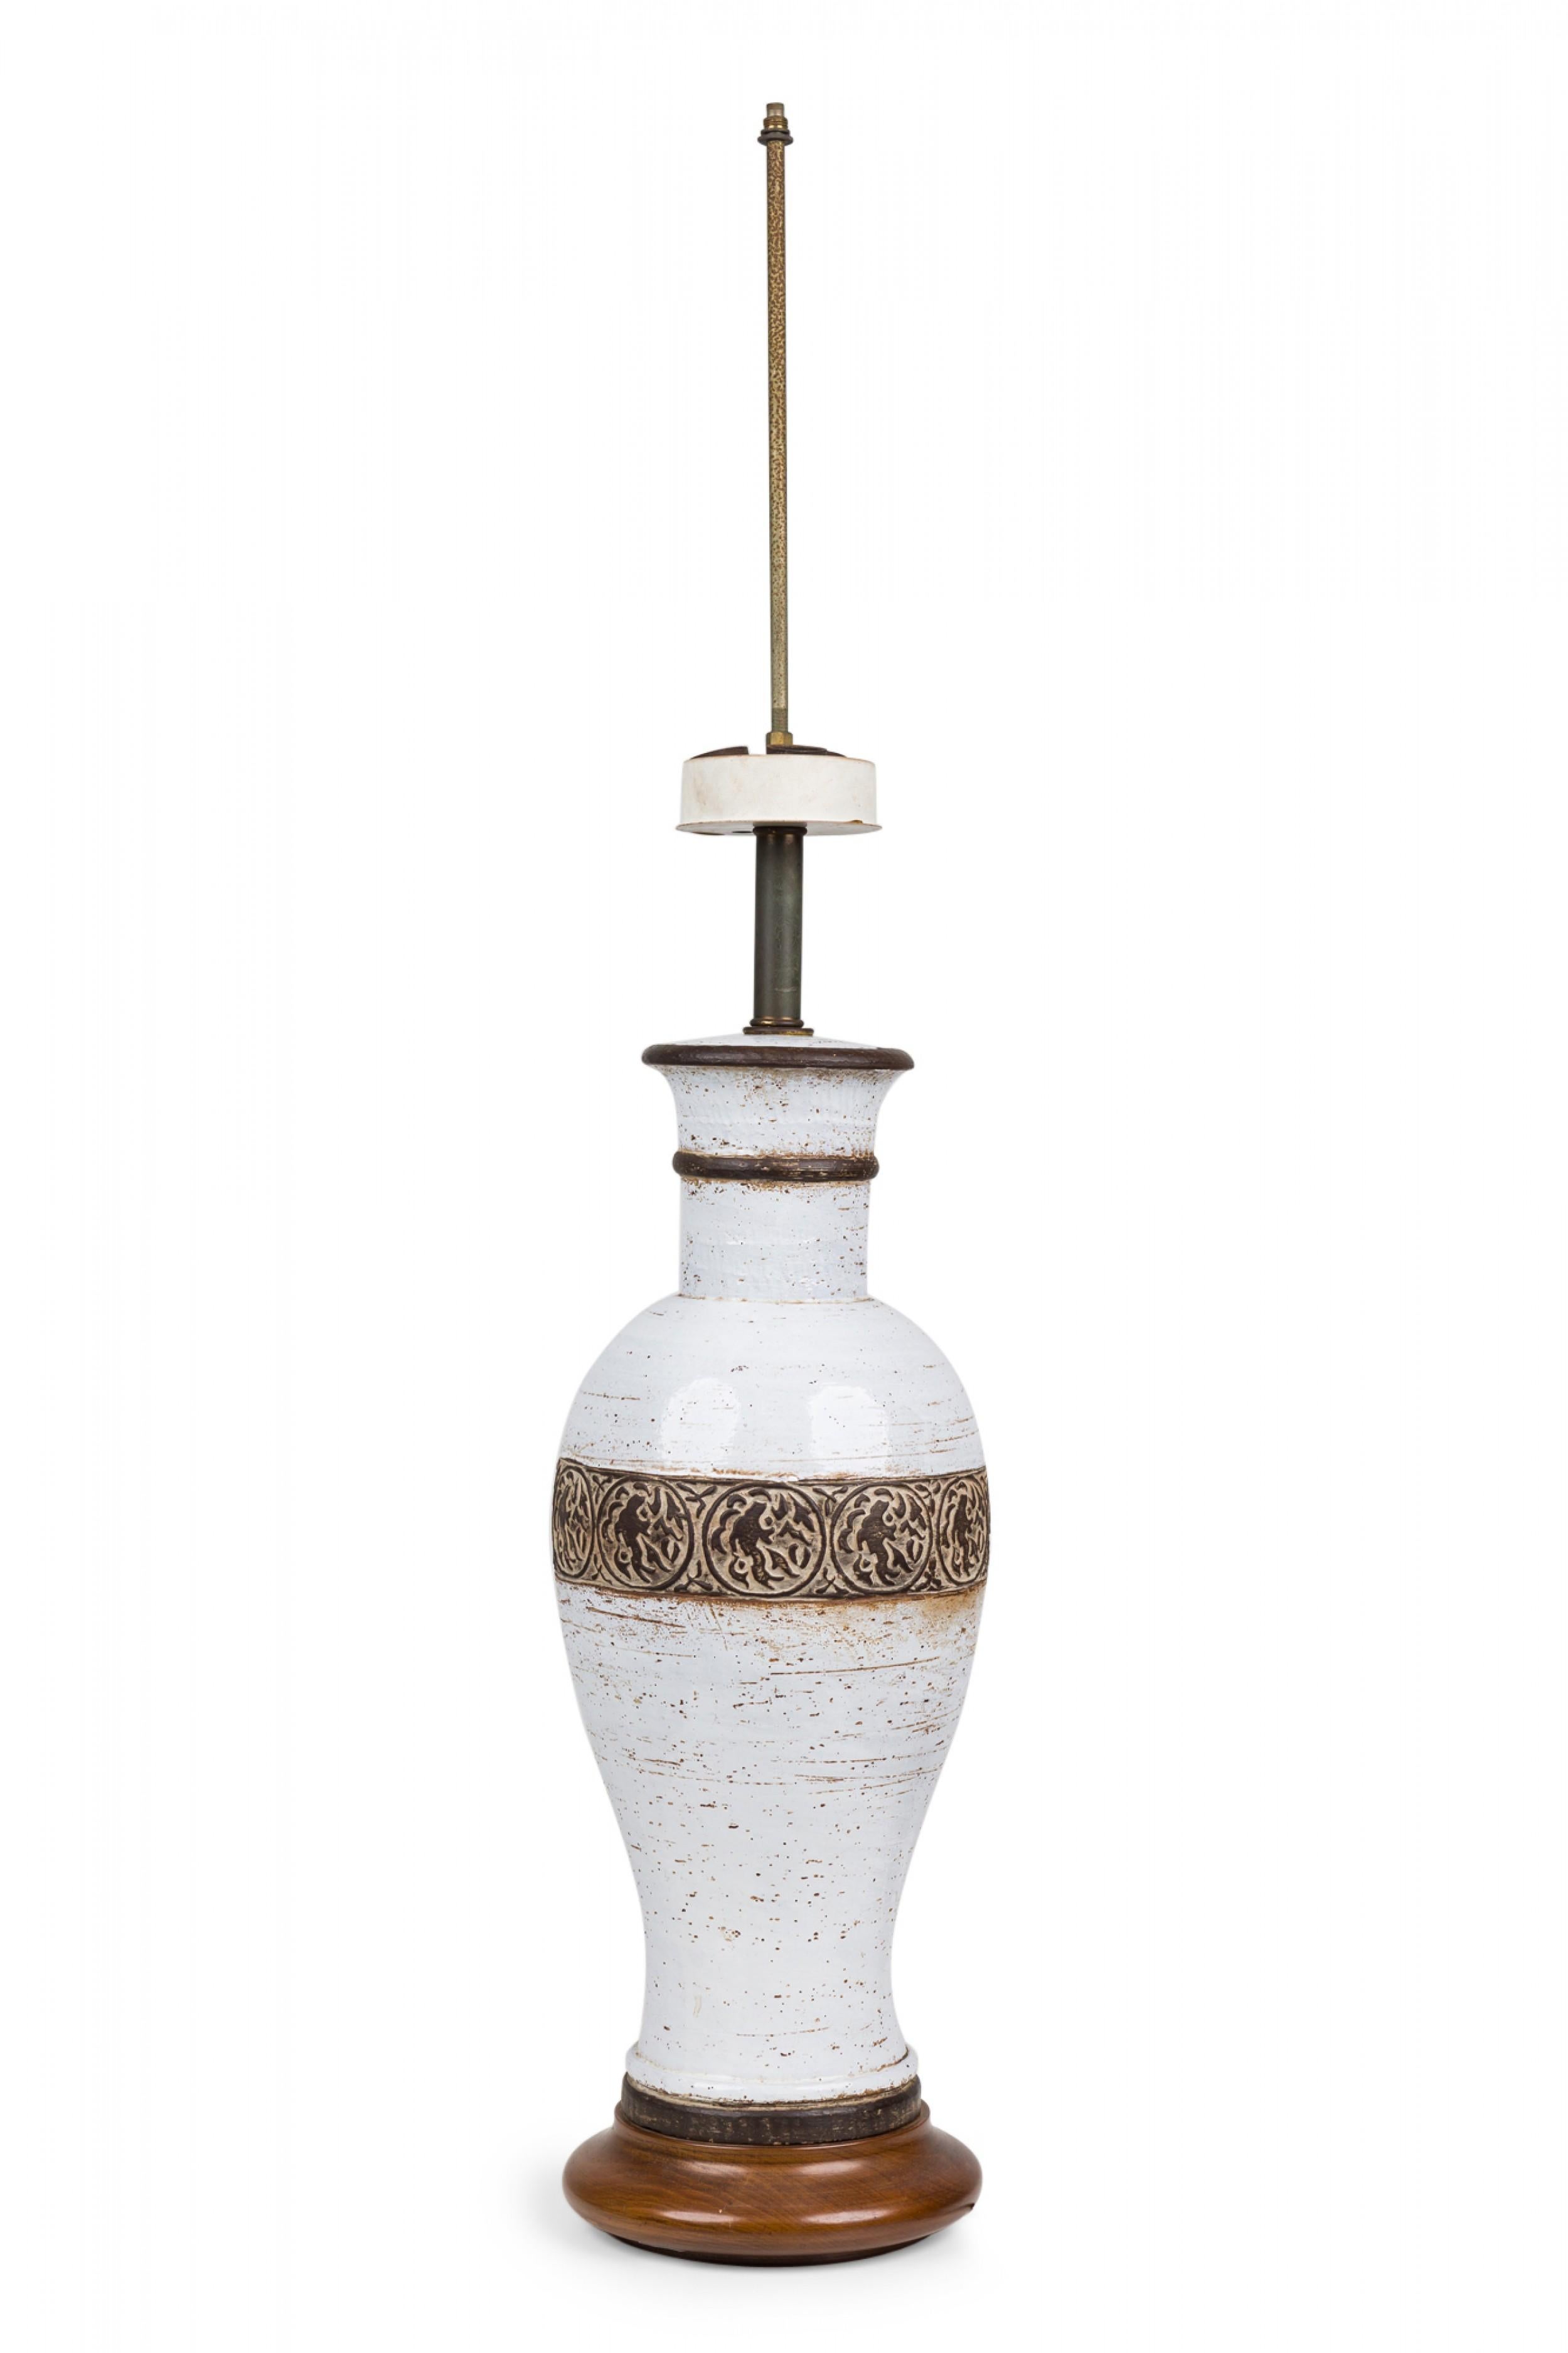 Ugo Zaccagnini Italian Ceramic White Glazed Urn Table Lamp on Light Wood Base For Sale 2